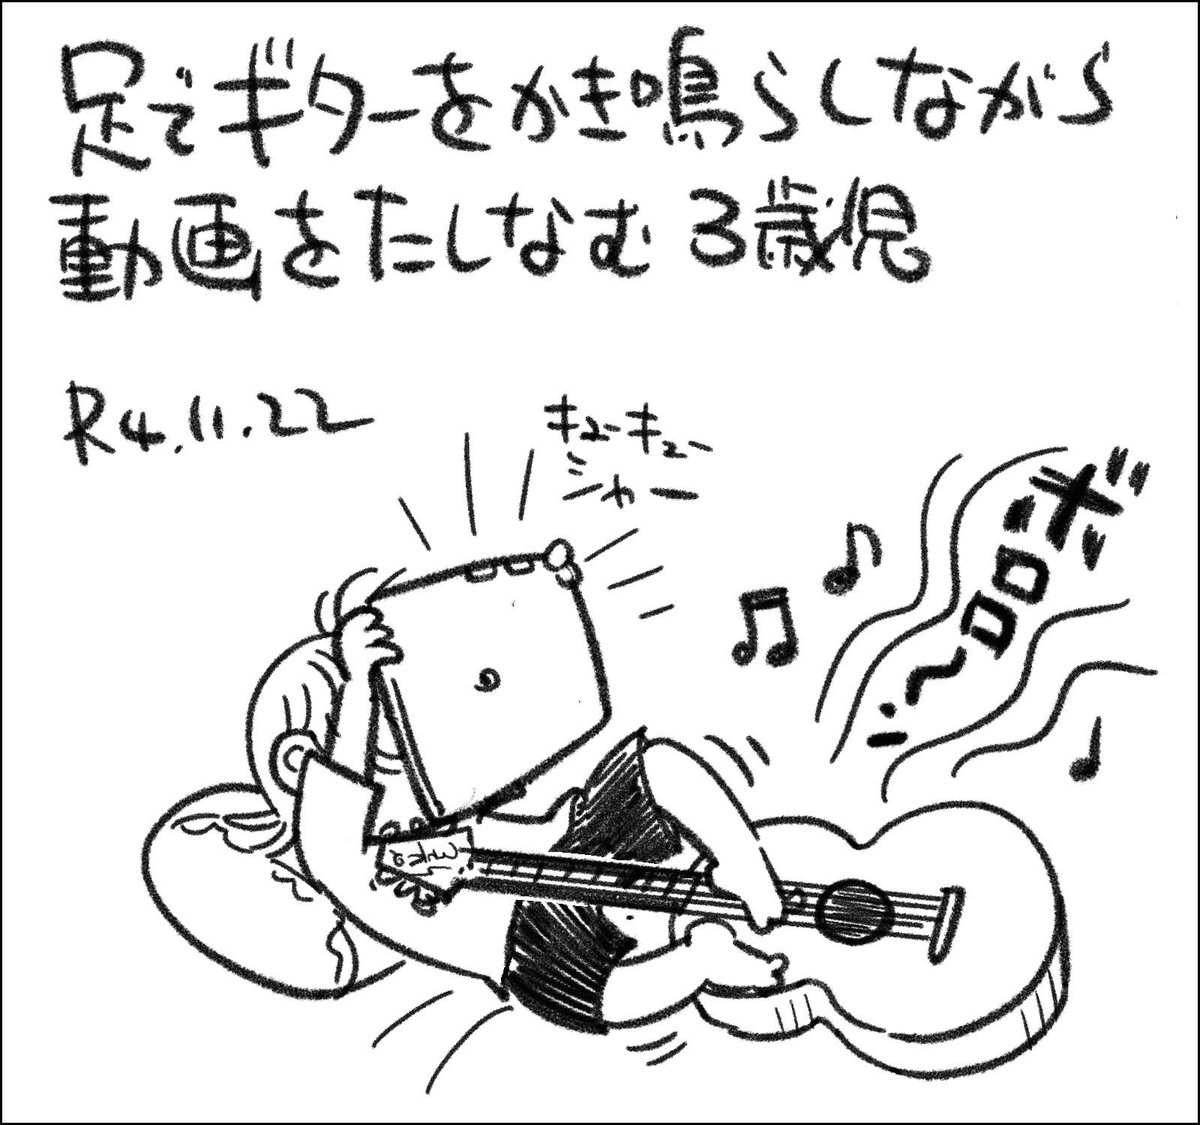 何でギターがあるのかは謎です。 #父娘ぐらし #日記漫画 #育児絵日記 